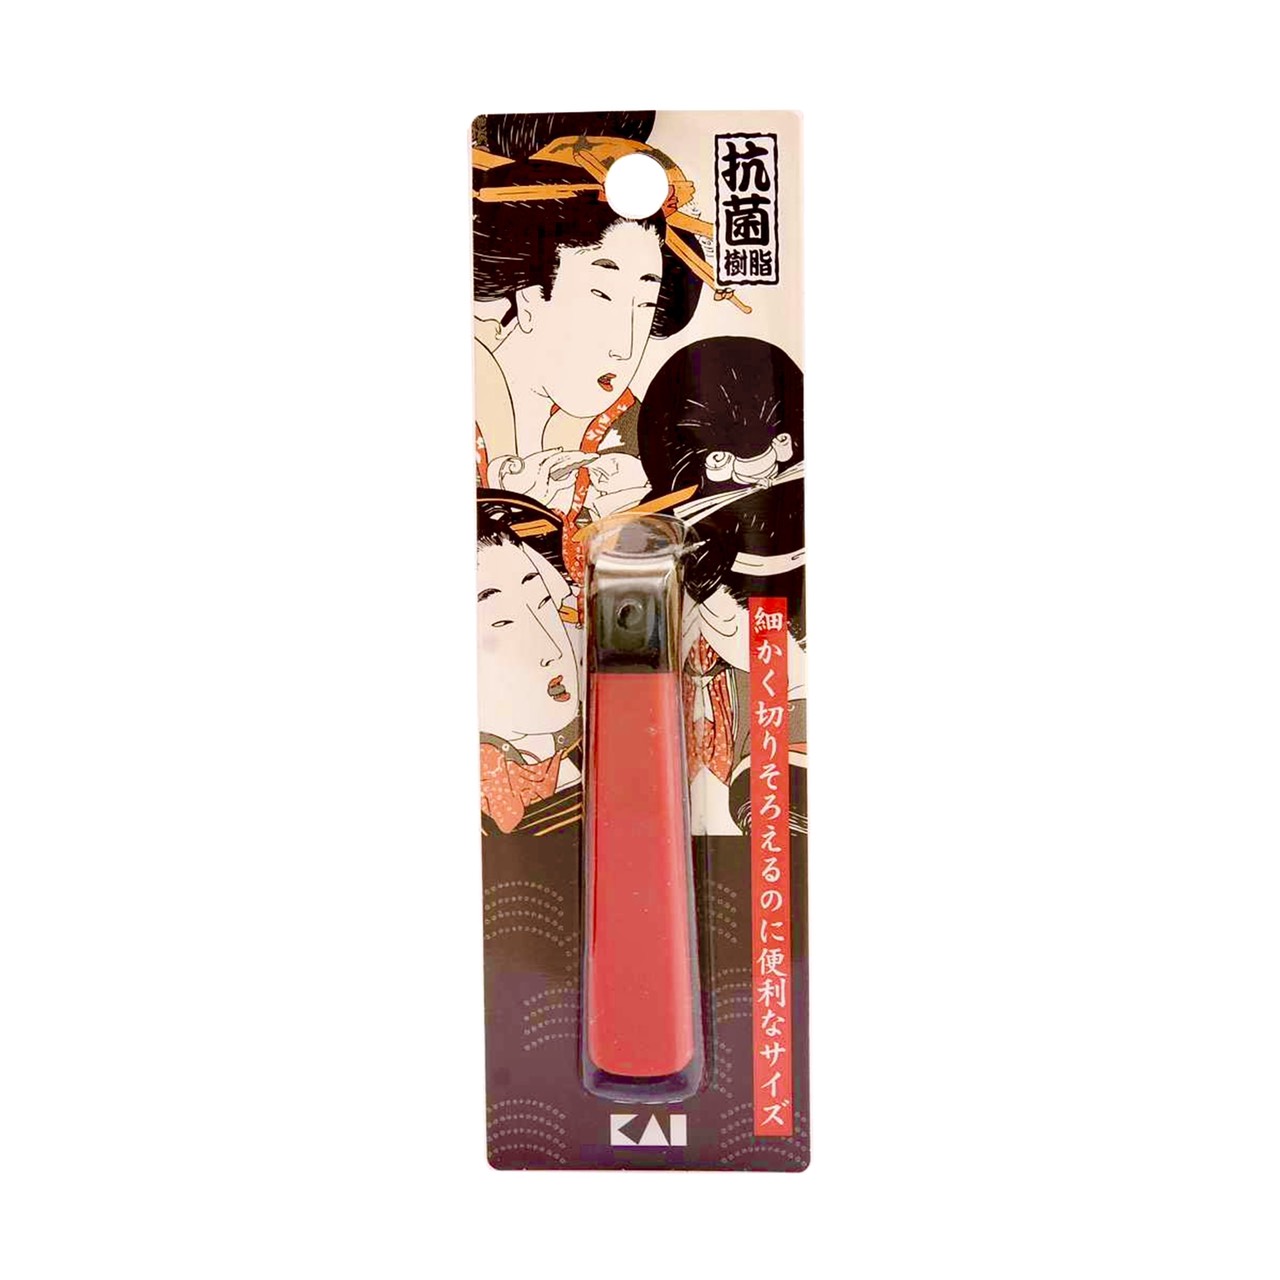 Bấm Móng Tay Inox Hình Geisha Razor Kai 89014-HC0467 Cỡ Đại (Màu Đỏ)